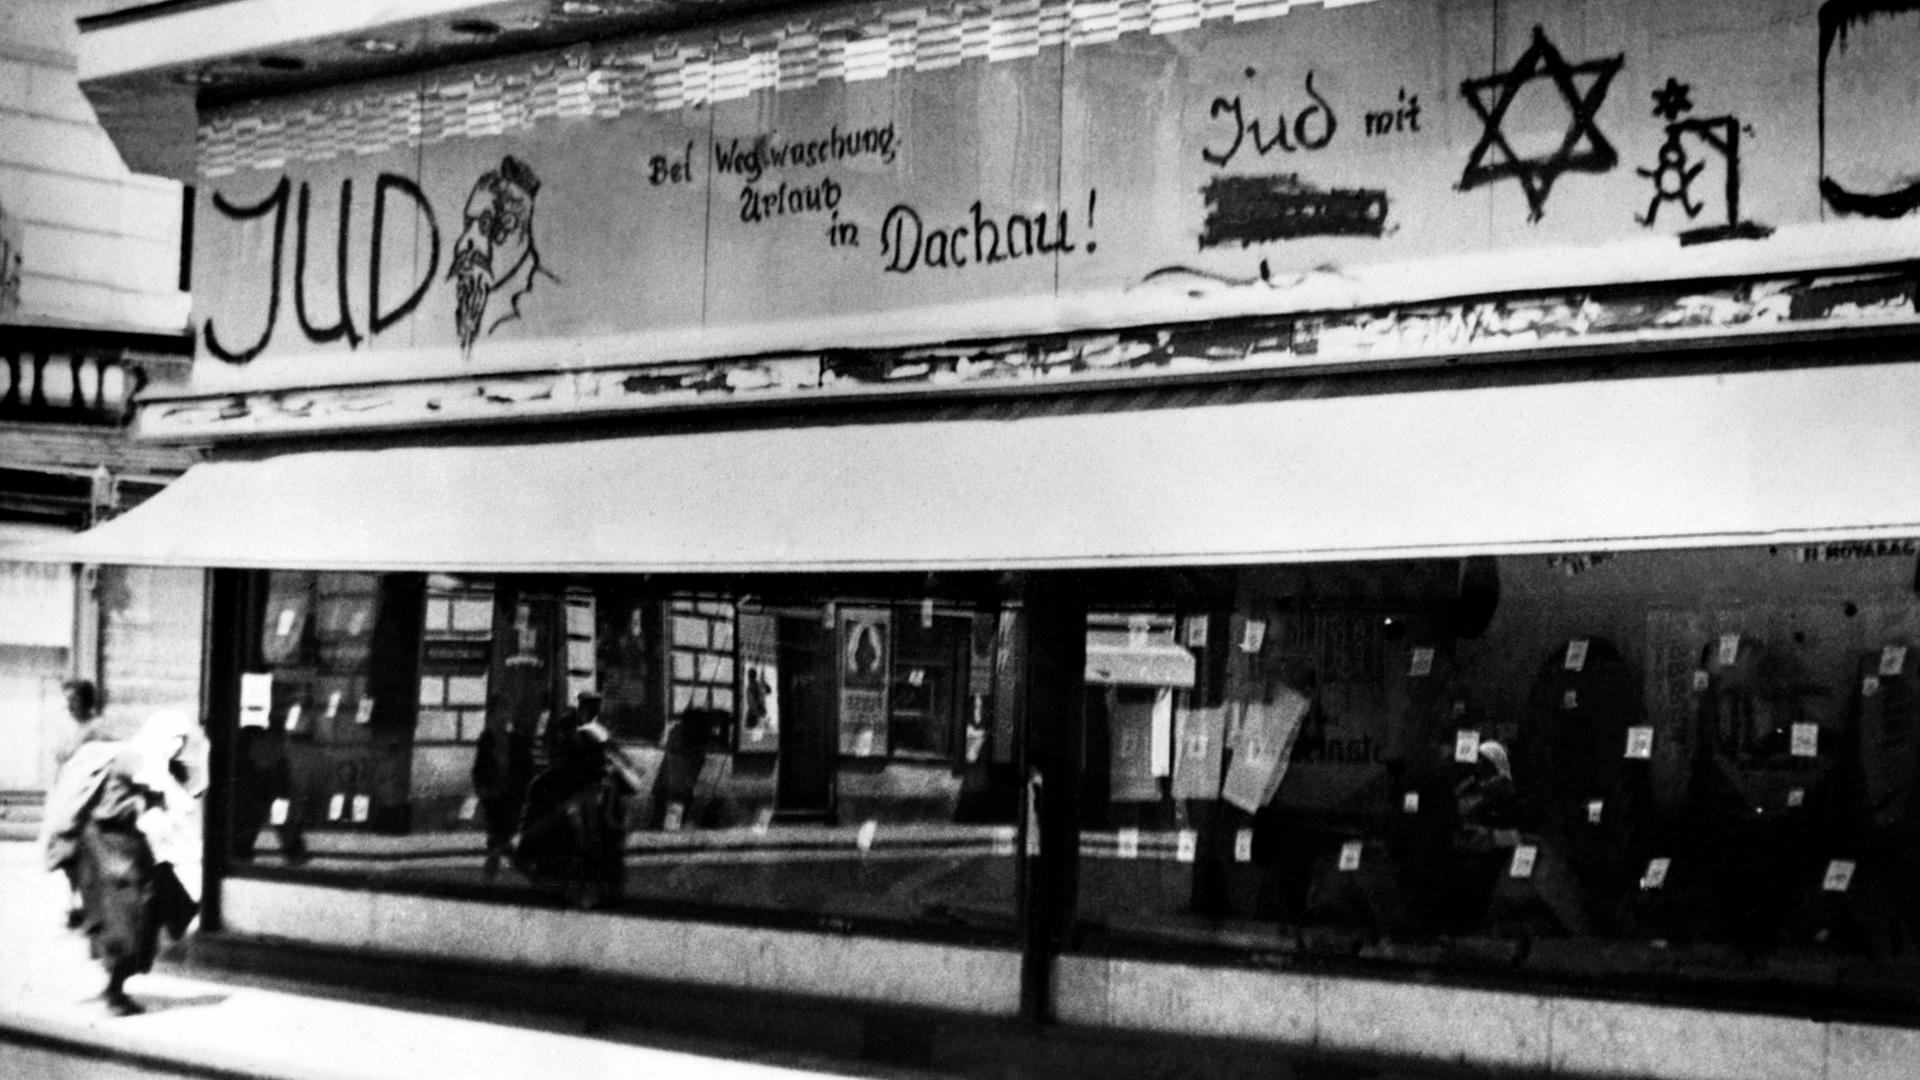 Im jüdischen Viertel in Wien, 1938. Beleidigungen und Drohungen stehen mit schwarzer Schrift über dem Schaufenster eines Geschäftes: "Bei Wegwaschung Urlaub in Dachau" und ein Männchen hängt an einem Galgen.